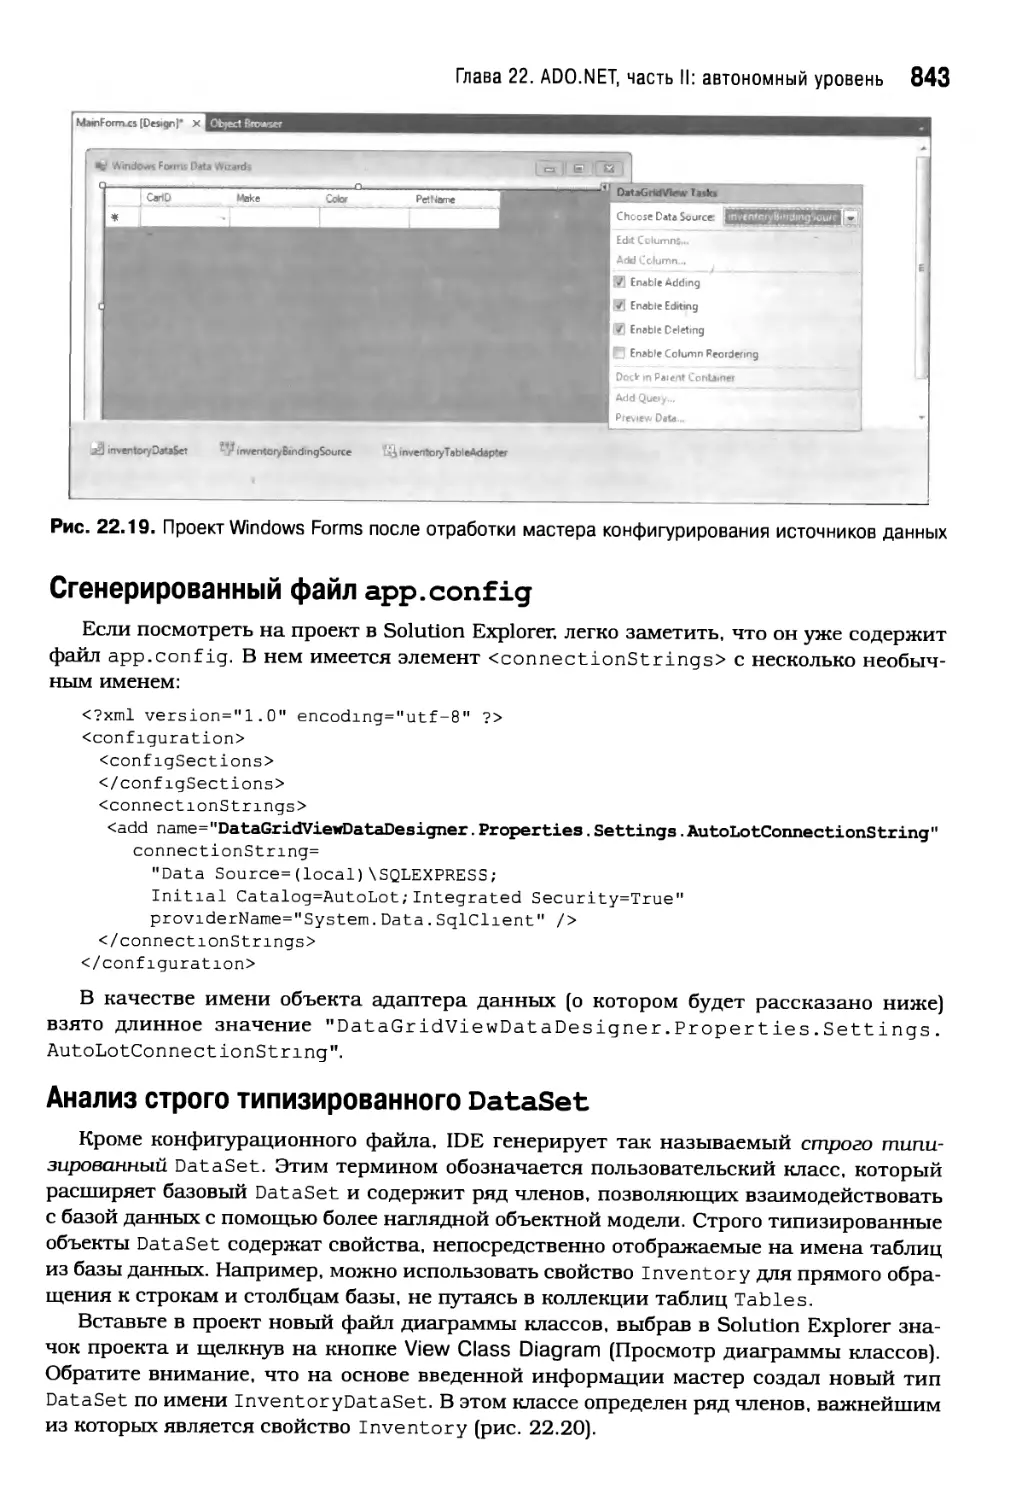 Сгенерированный файл арр. conf ig
Анализ строго типизированного DataSet